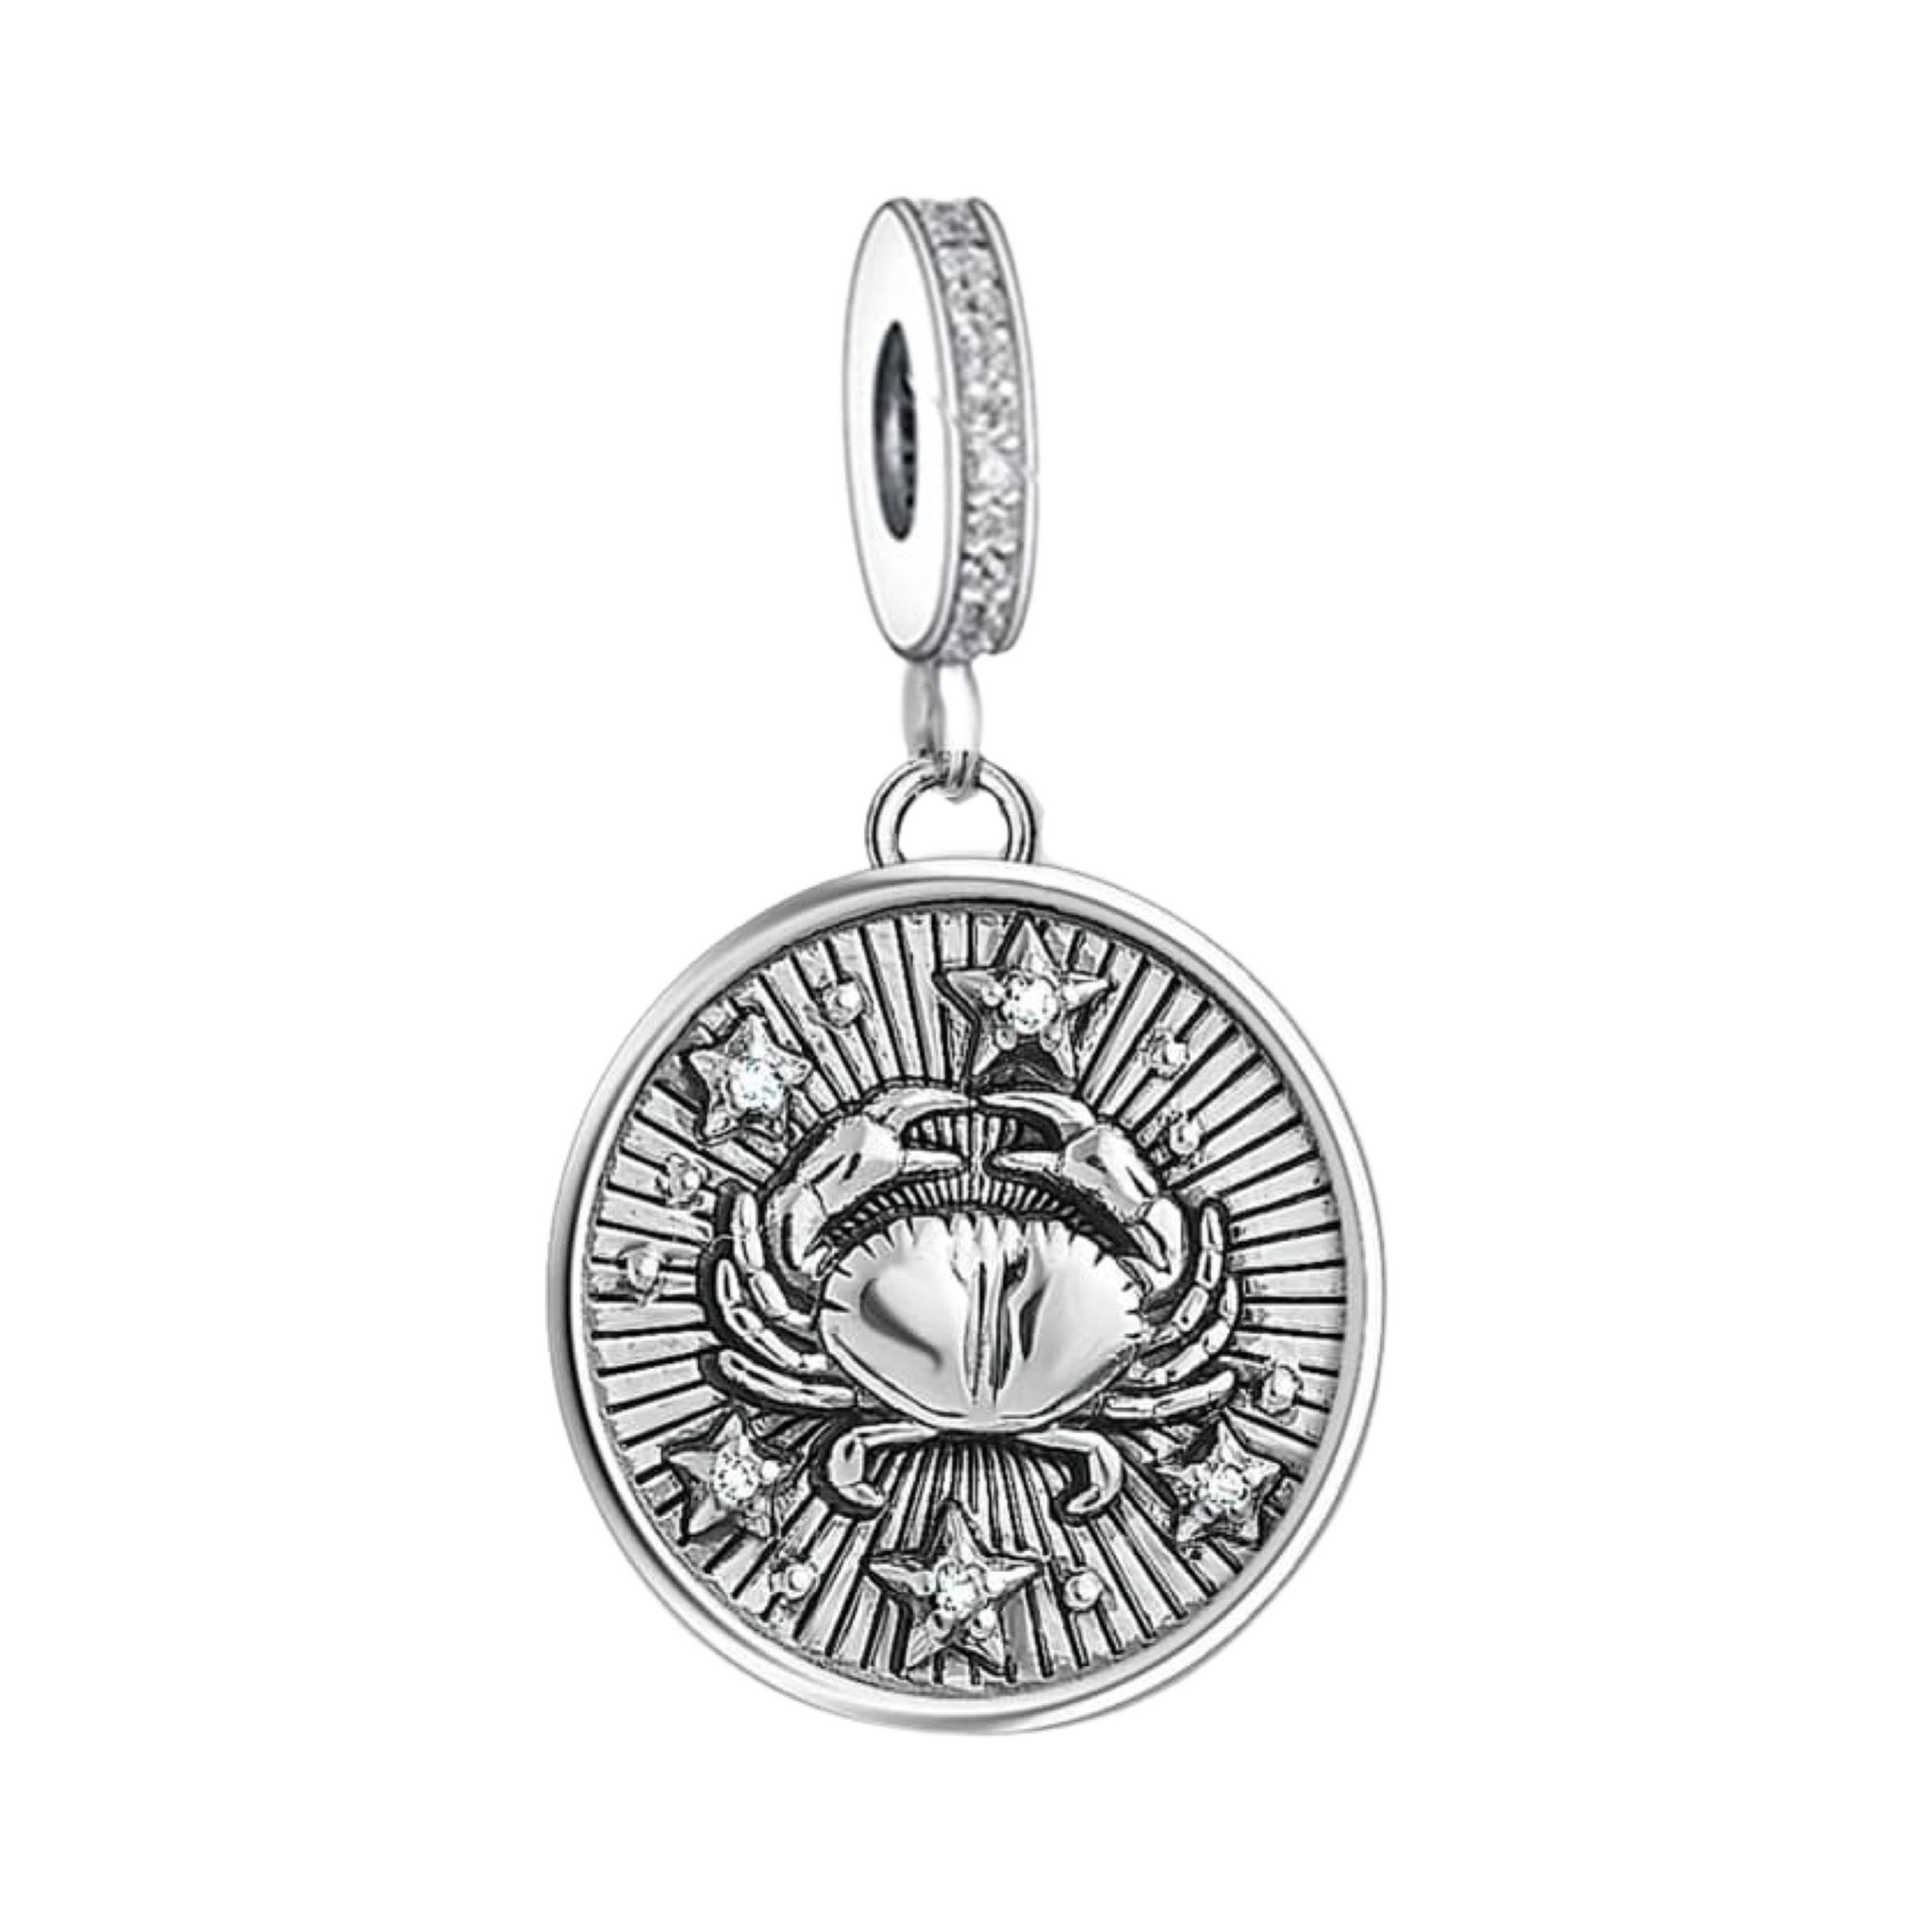 Product Afbeelding Vooraanzicht van onze prachtige Kreeft charm uit de sterrenbeeld collectie. Deze lieve Horoscoop bedel kreeft rond is gemaakt van 925 sterling zilver met 3d kreeft bovenop de medaillon.